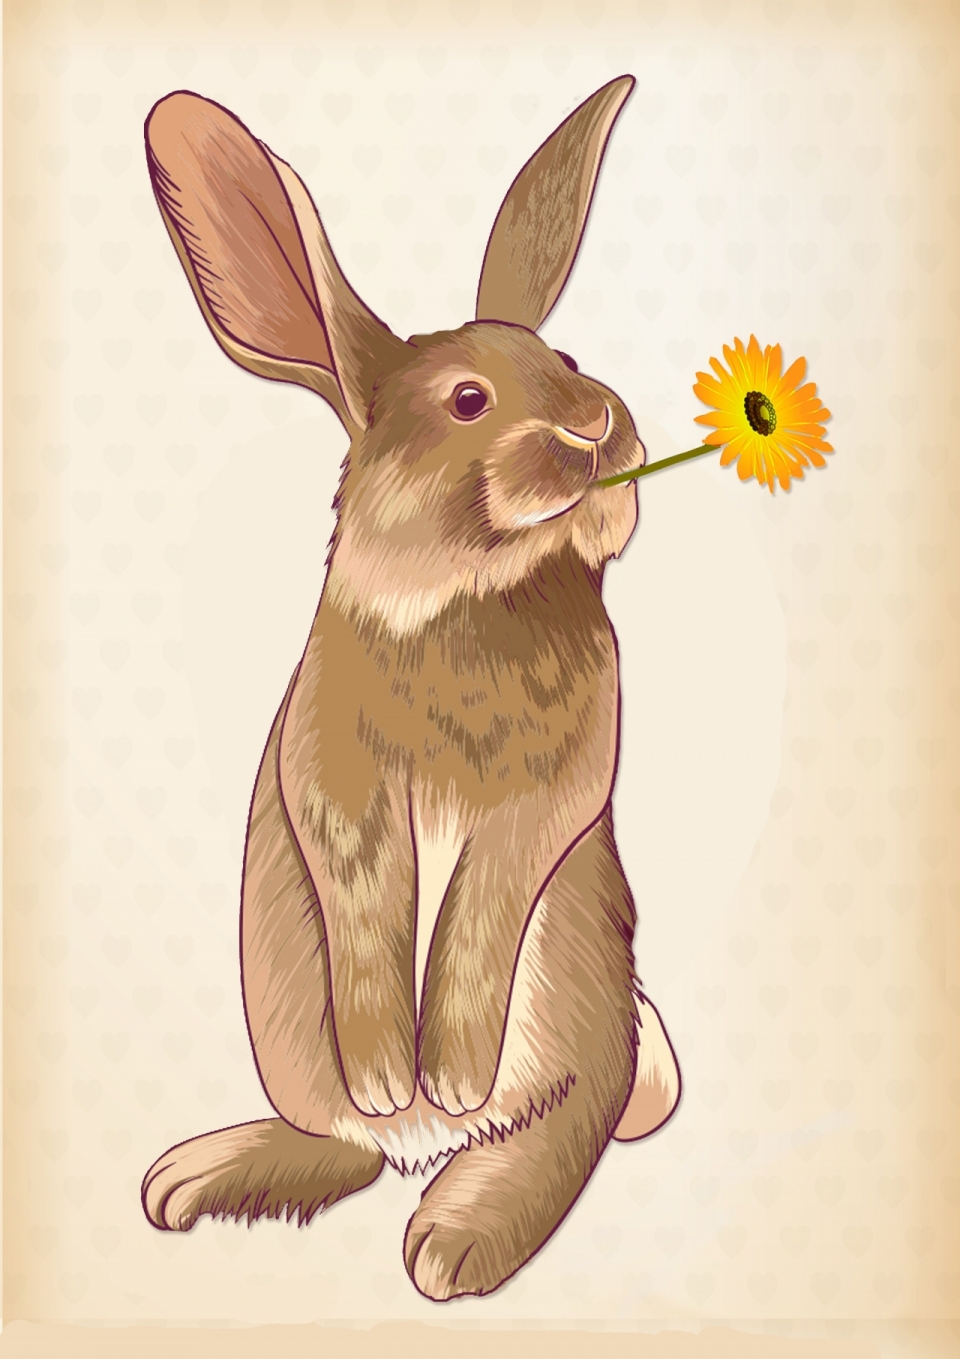 灰兔叼黄花可爱风格手绘素材